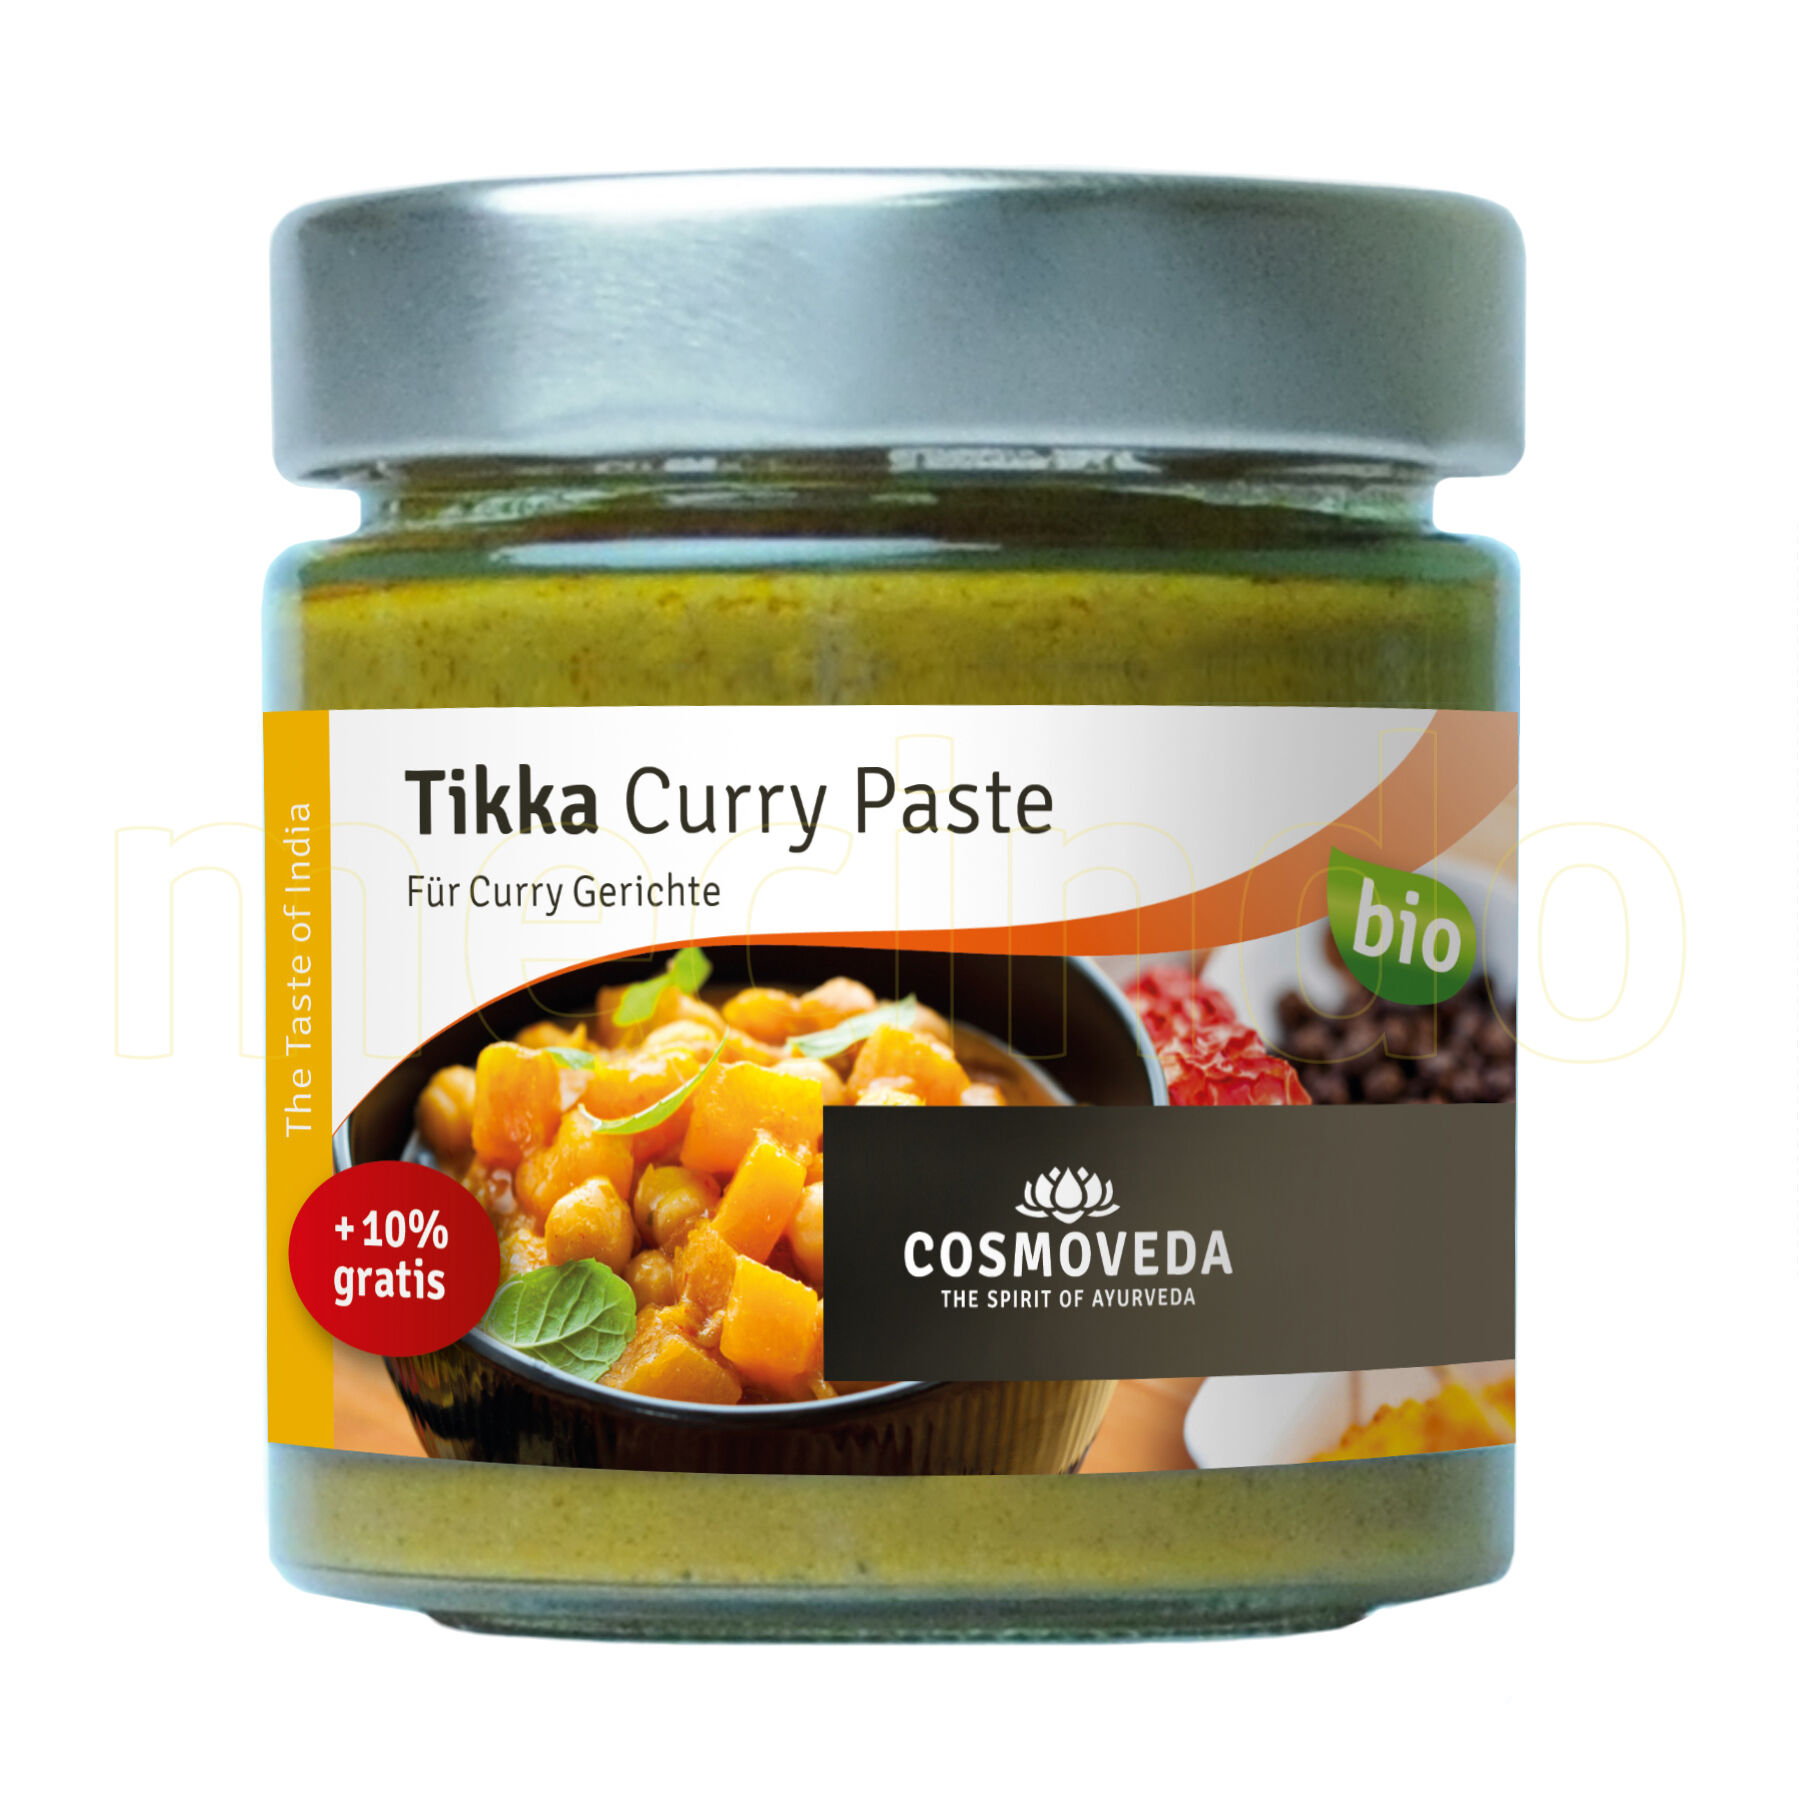 Cosmoveda Tikka Curry Paste Ø - 175 g